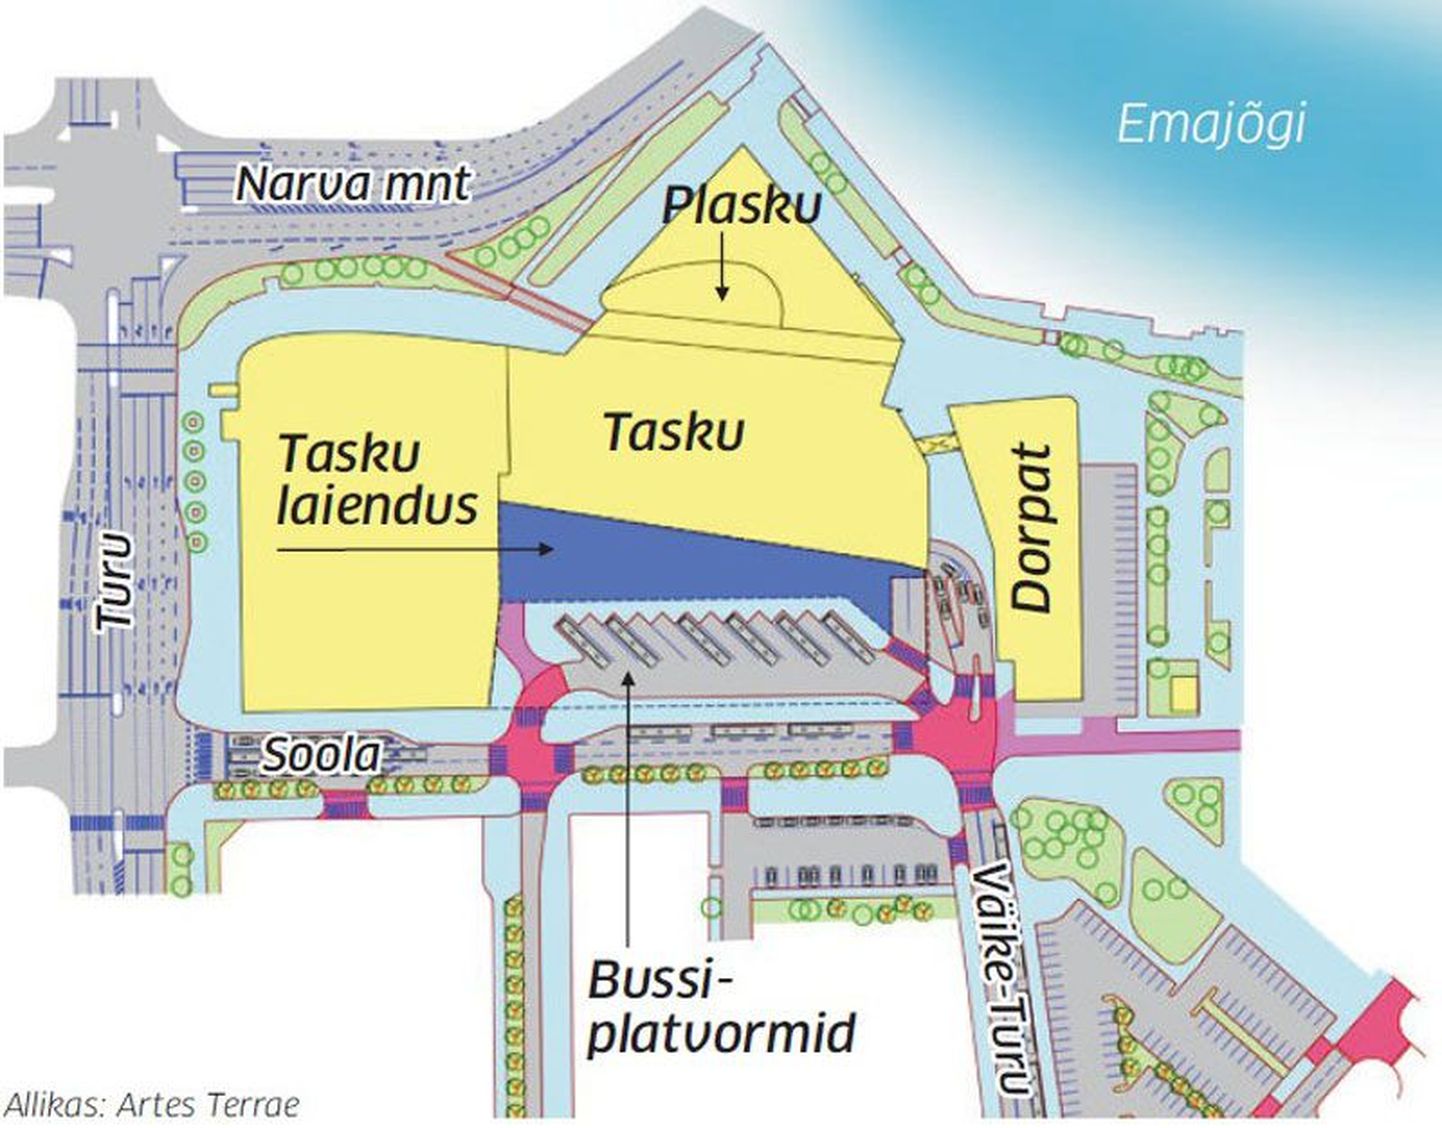 Uus bussijaam tuleb laieneva Tasku esimesele korrusele. Selle asukoht selgub projekteerimise käigus.